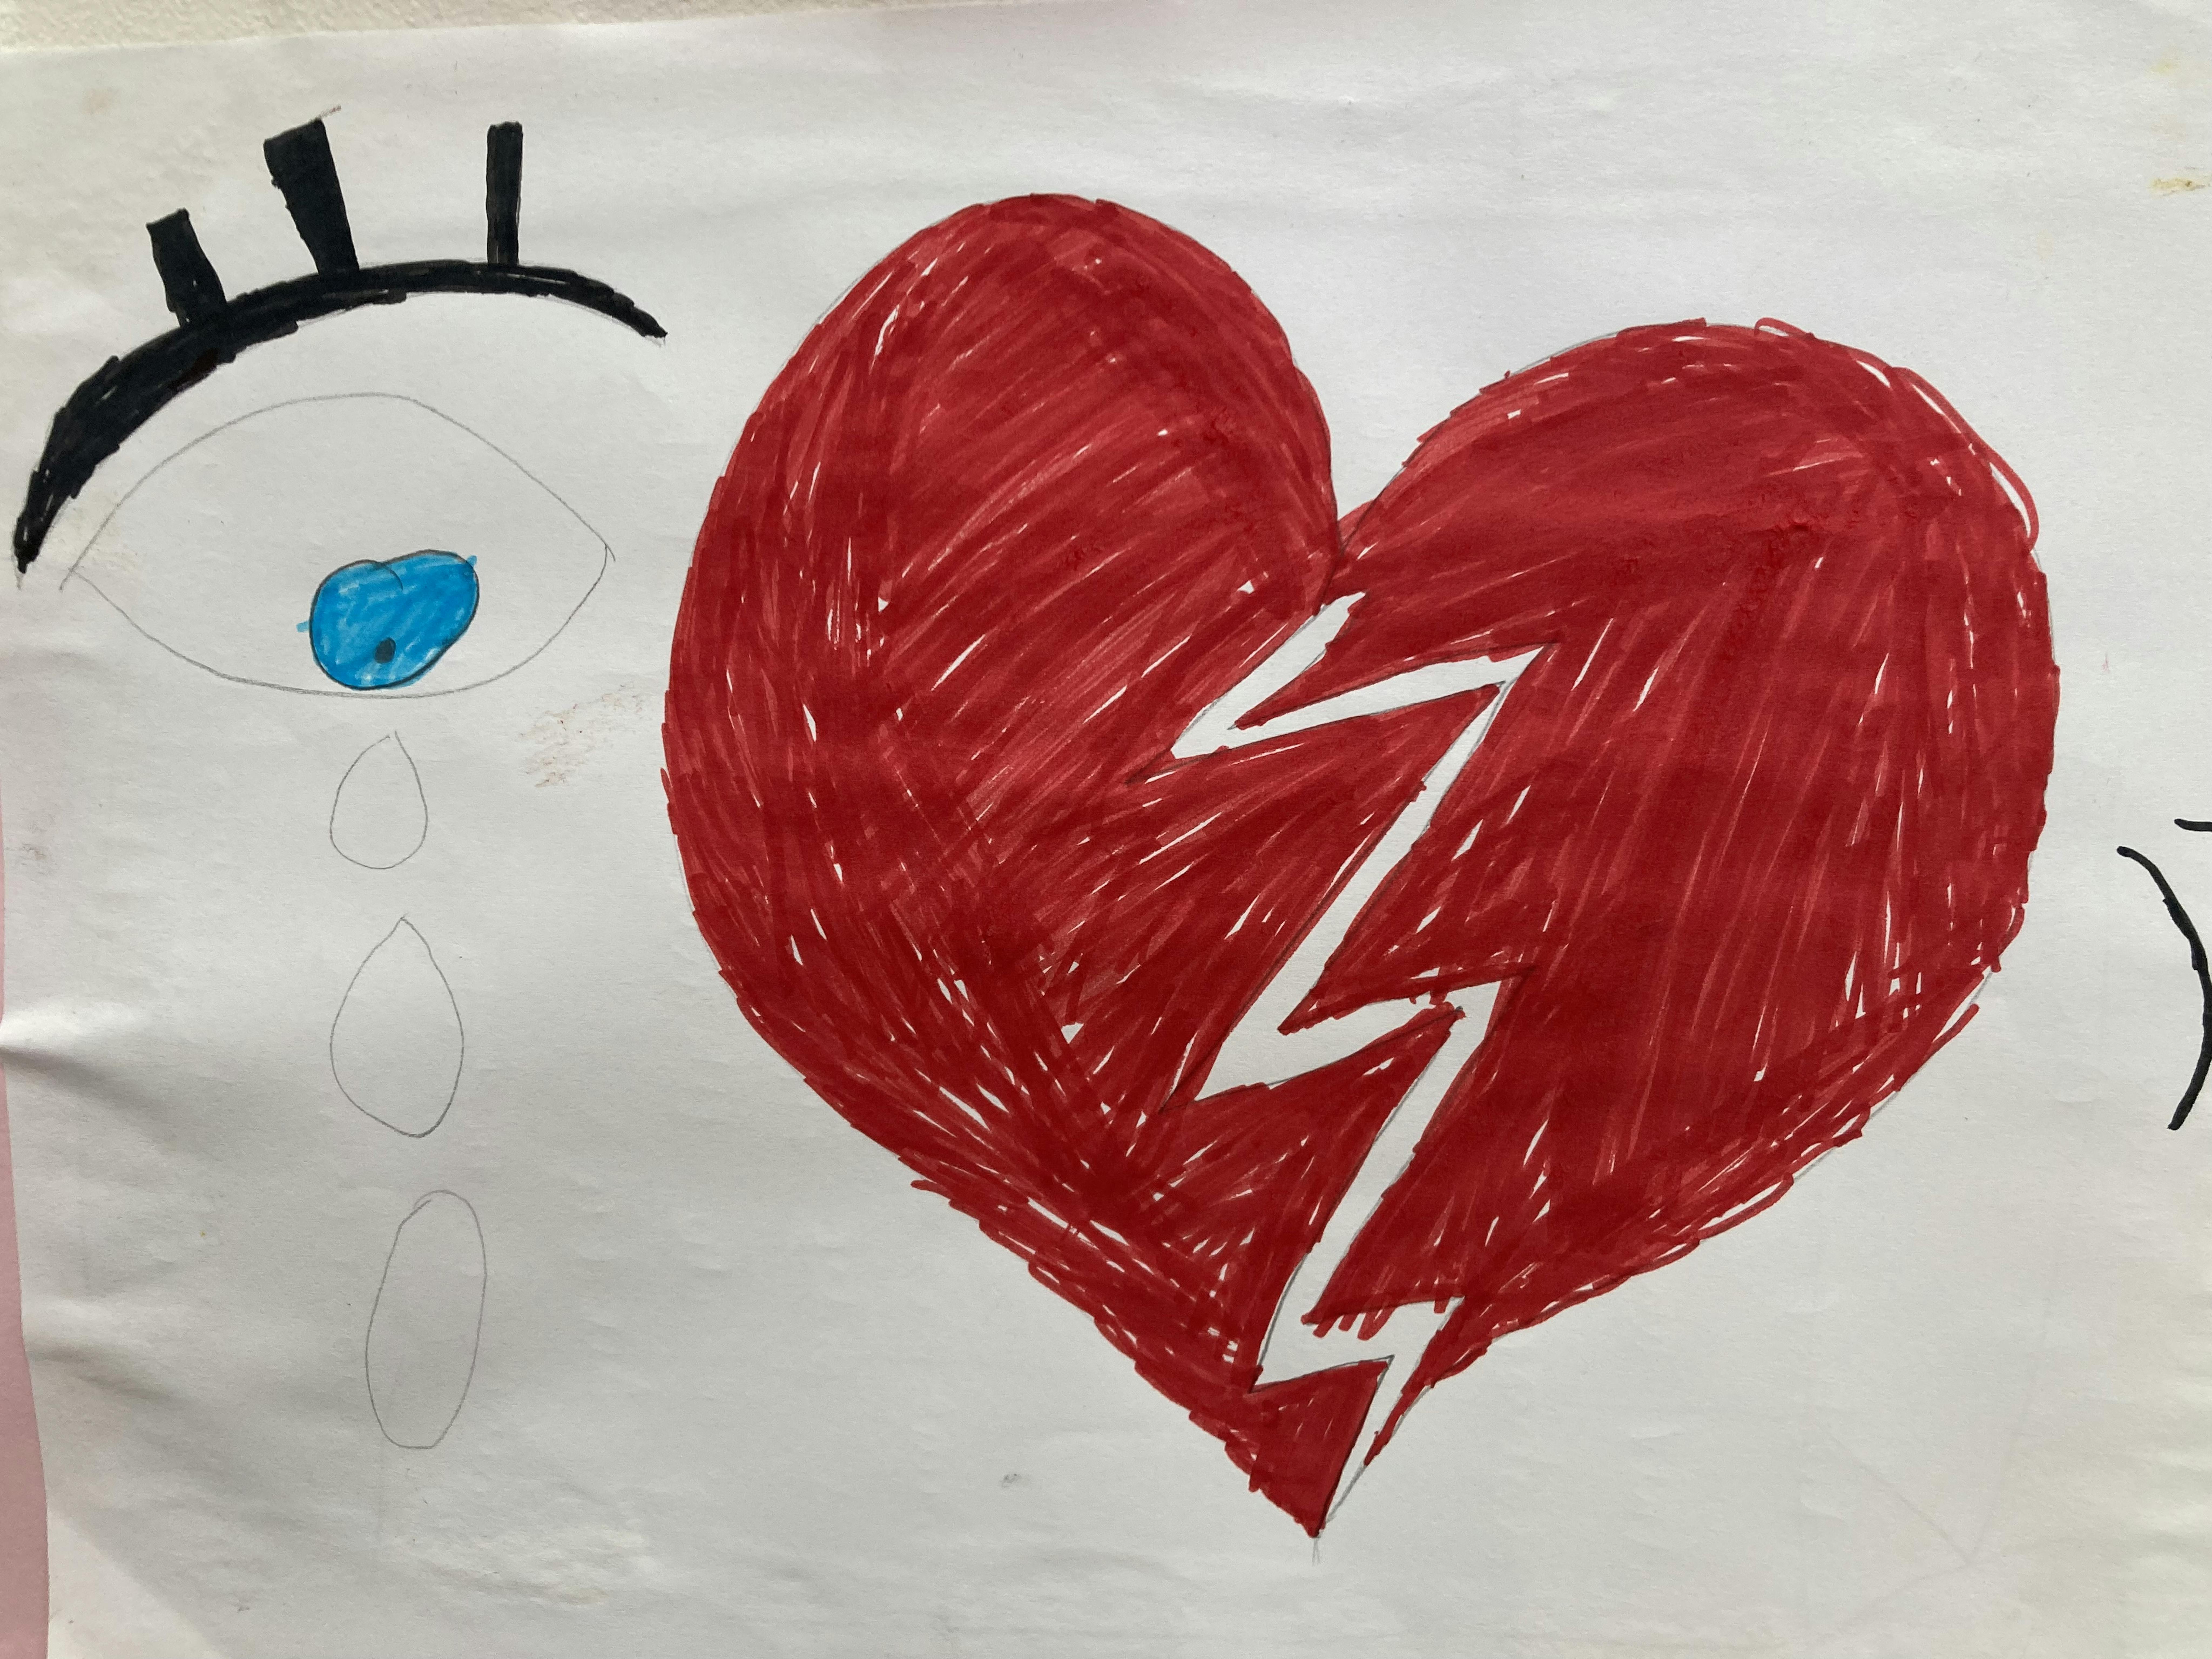 Cuore spezzato. Uno dei disegni di bambine/i e adolescenti in hotspot raccolti dal team UNICEF-Save the Children durante attività ricreative e di gestione dello stress.